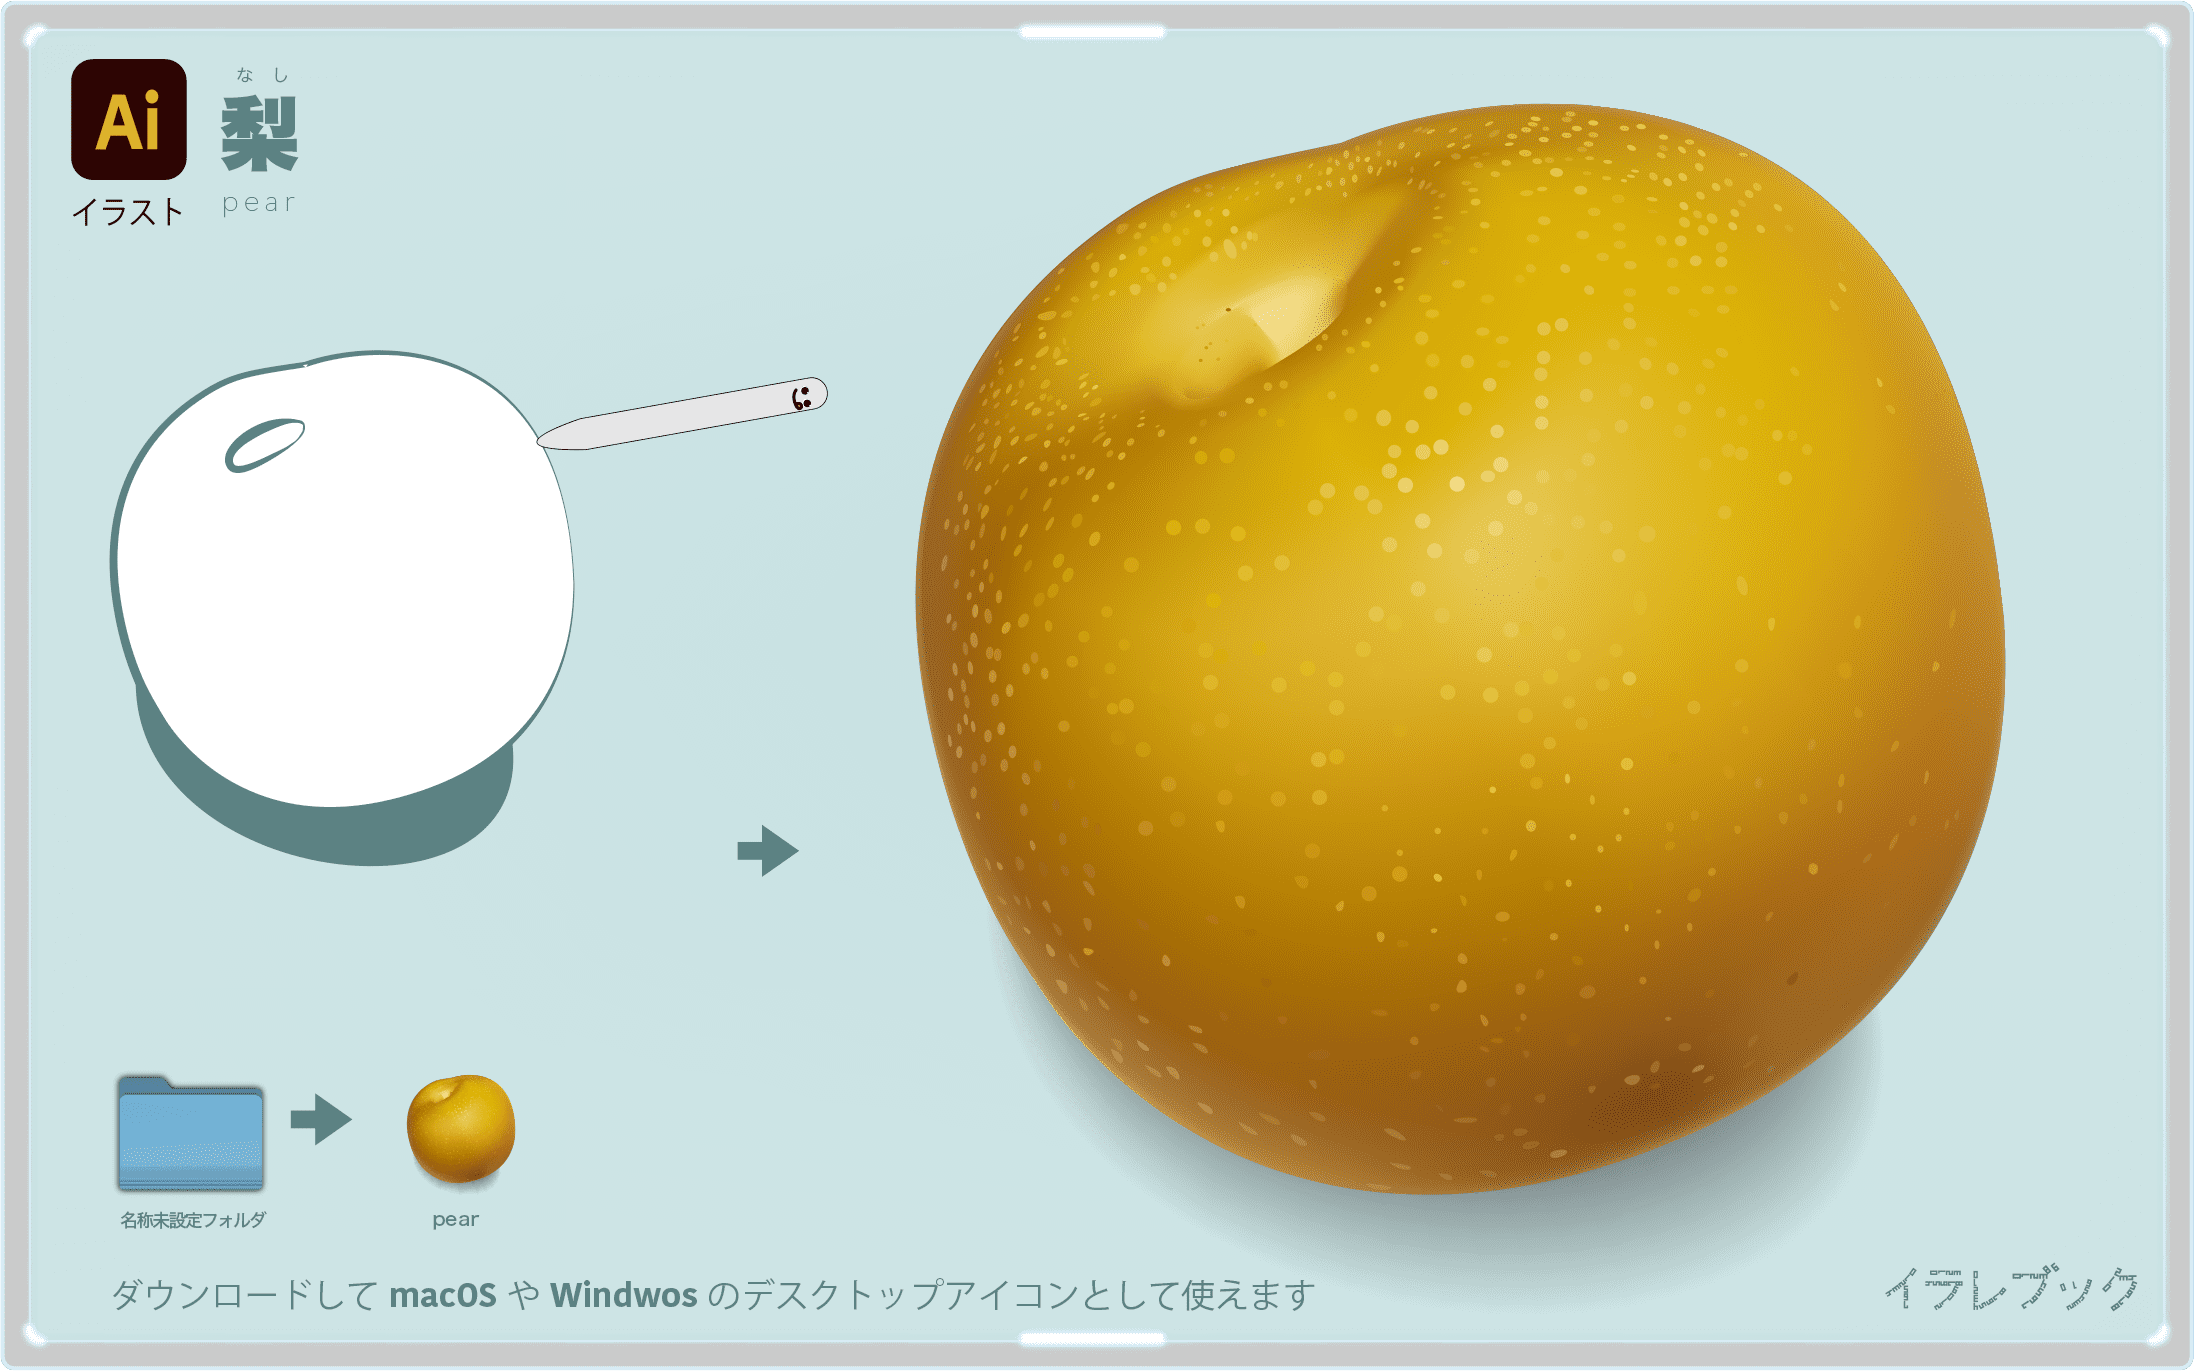 梨 シャキシャキの秋の味覚 カロリー 栄養 洋梨と和梨の違いや共通点を解説 Pear